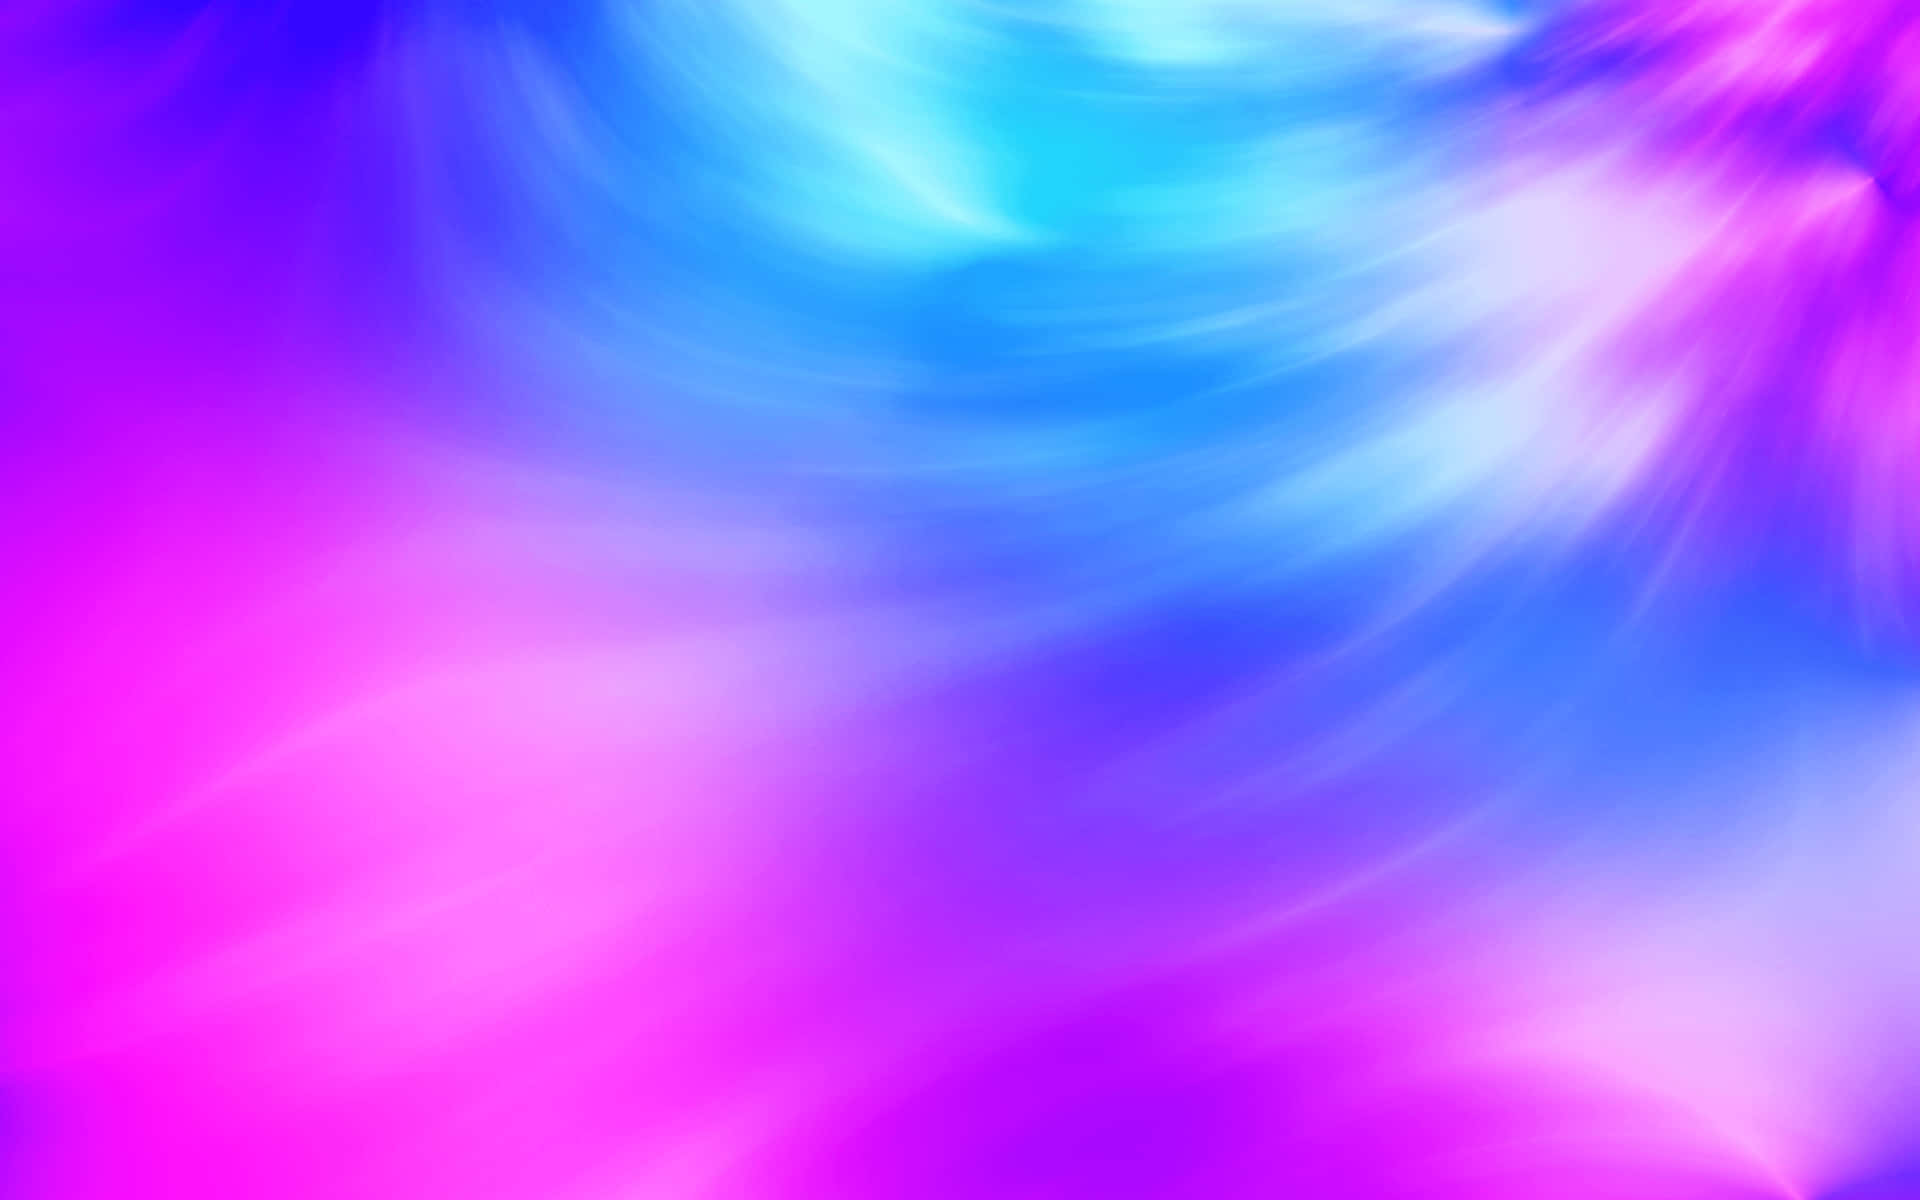 Unfondo Deslumbrante Y Vibrante En Tonos De Rosa Y Azul Que Aporta Energía Y Vida A Cualquier Espacio.